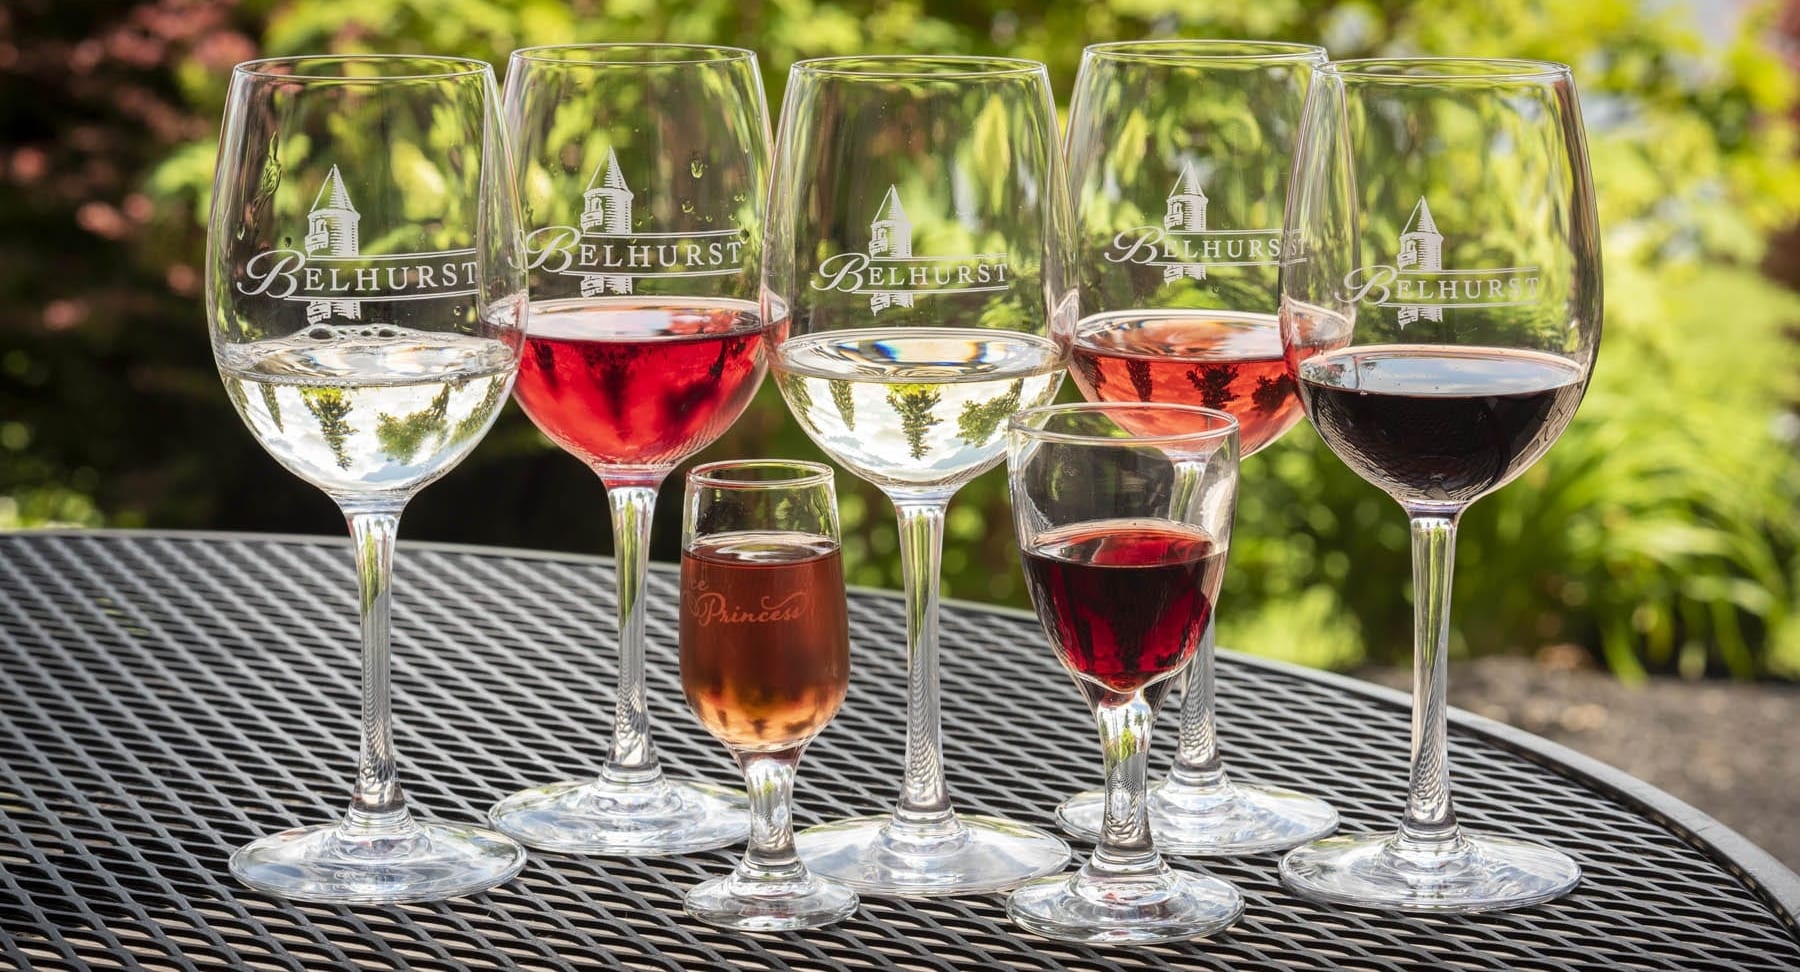 Belhurst wine glasses with assortment of wine in each.